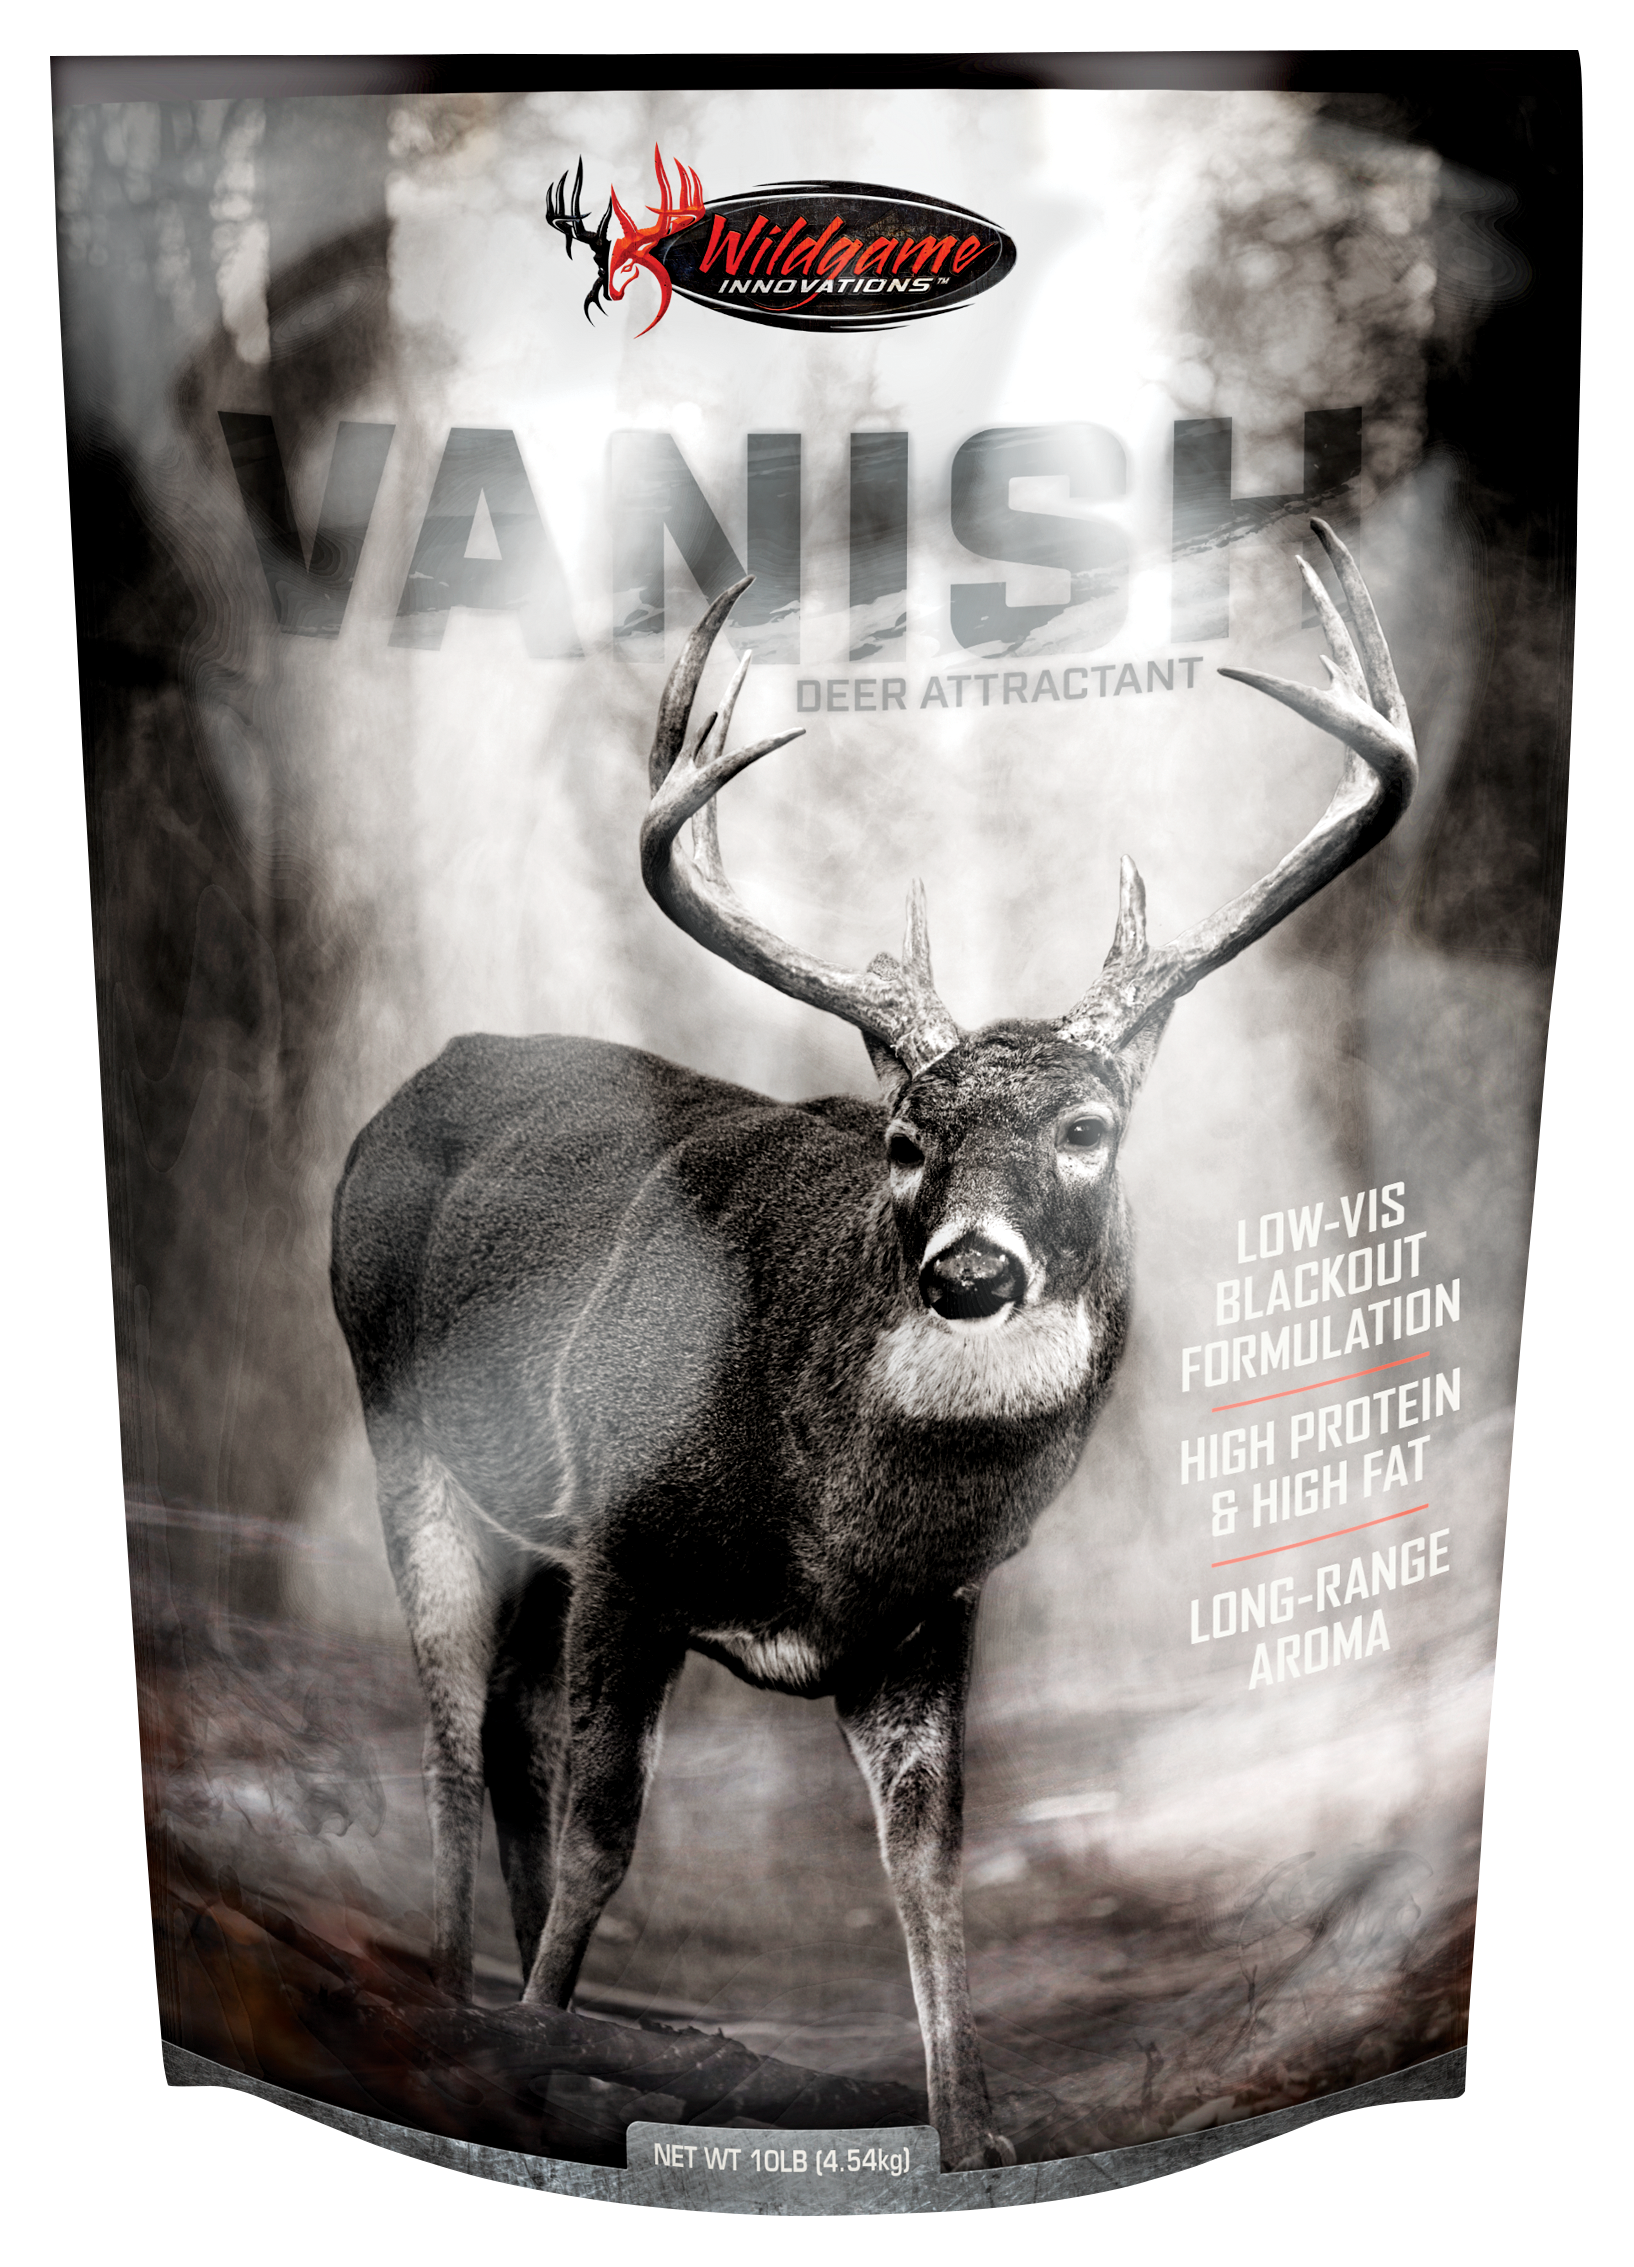 Wildgame Innovations Vanish Nutritional Supplement Deer Attractant ...